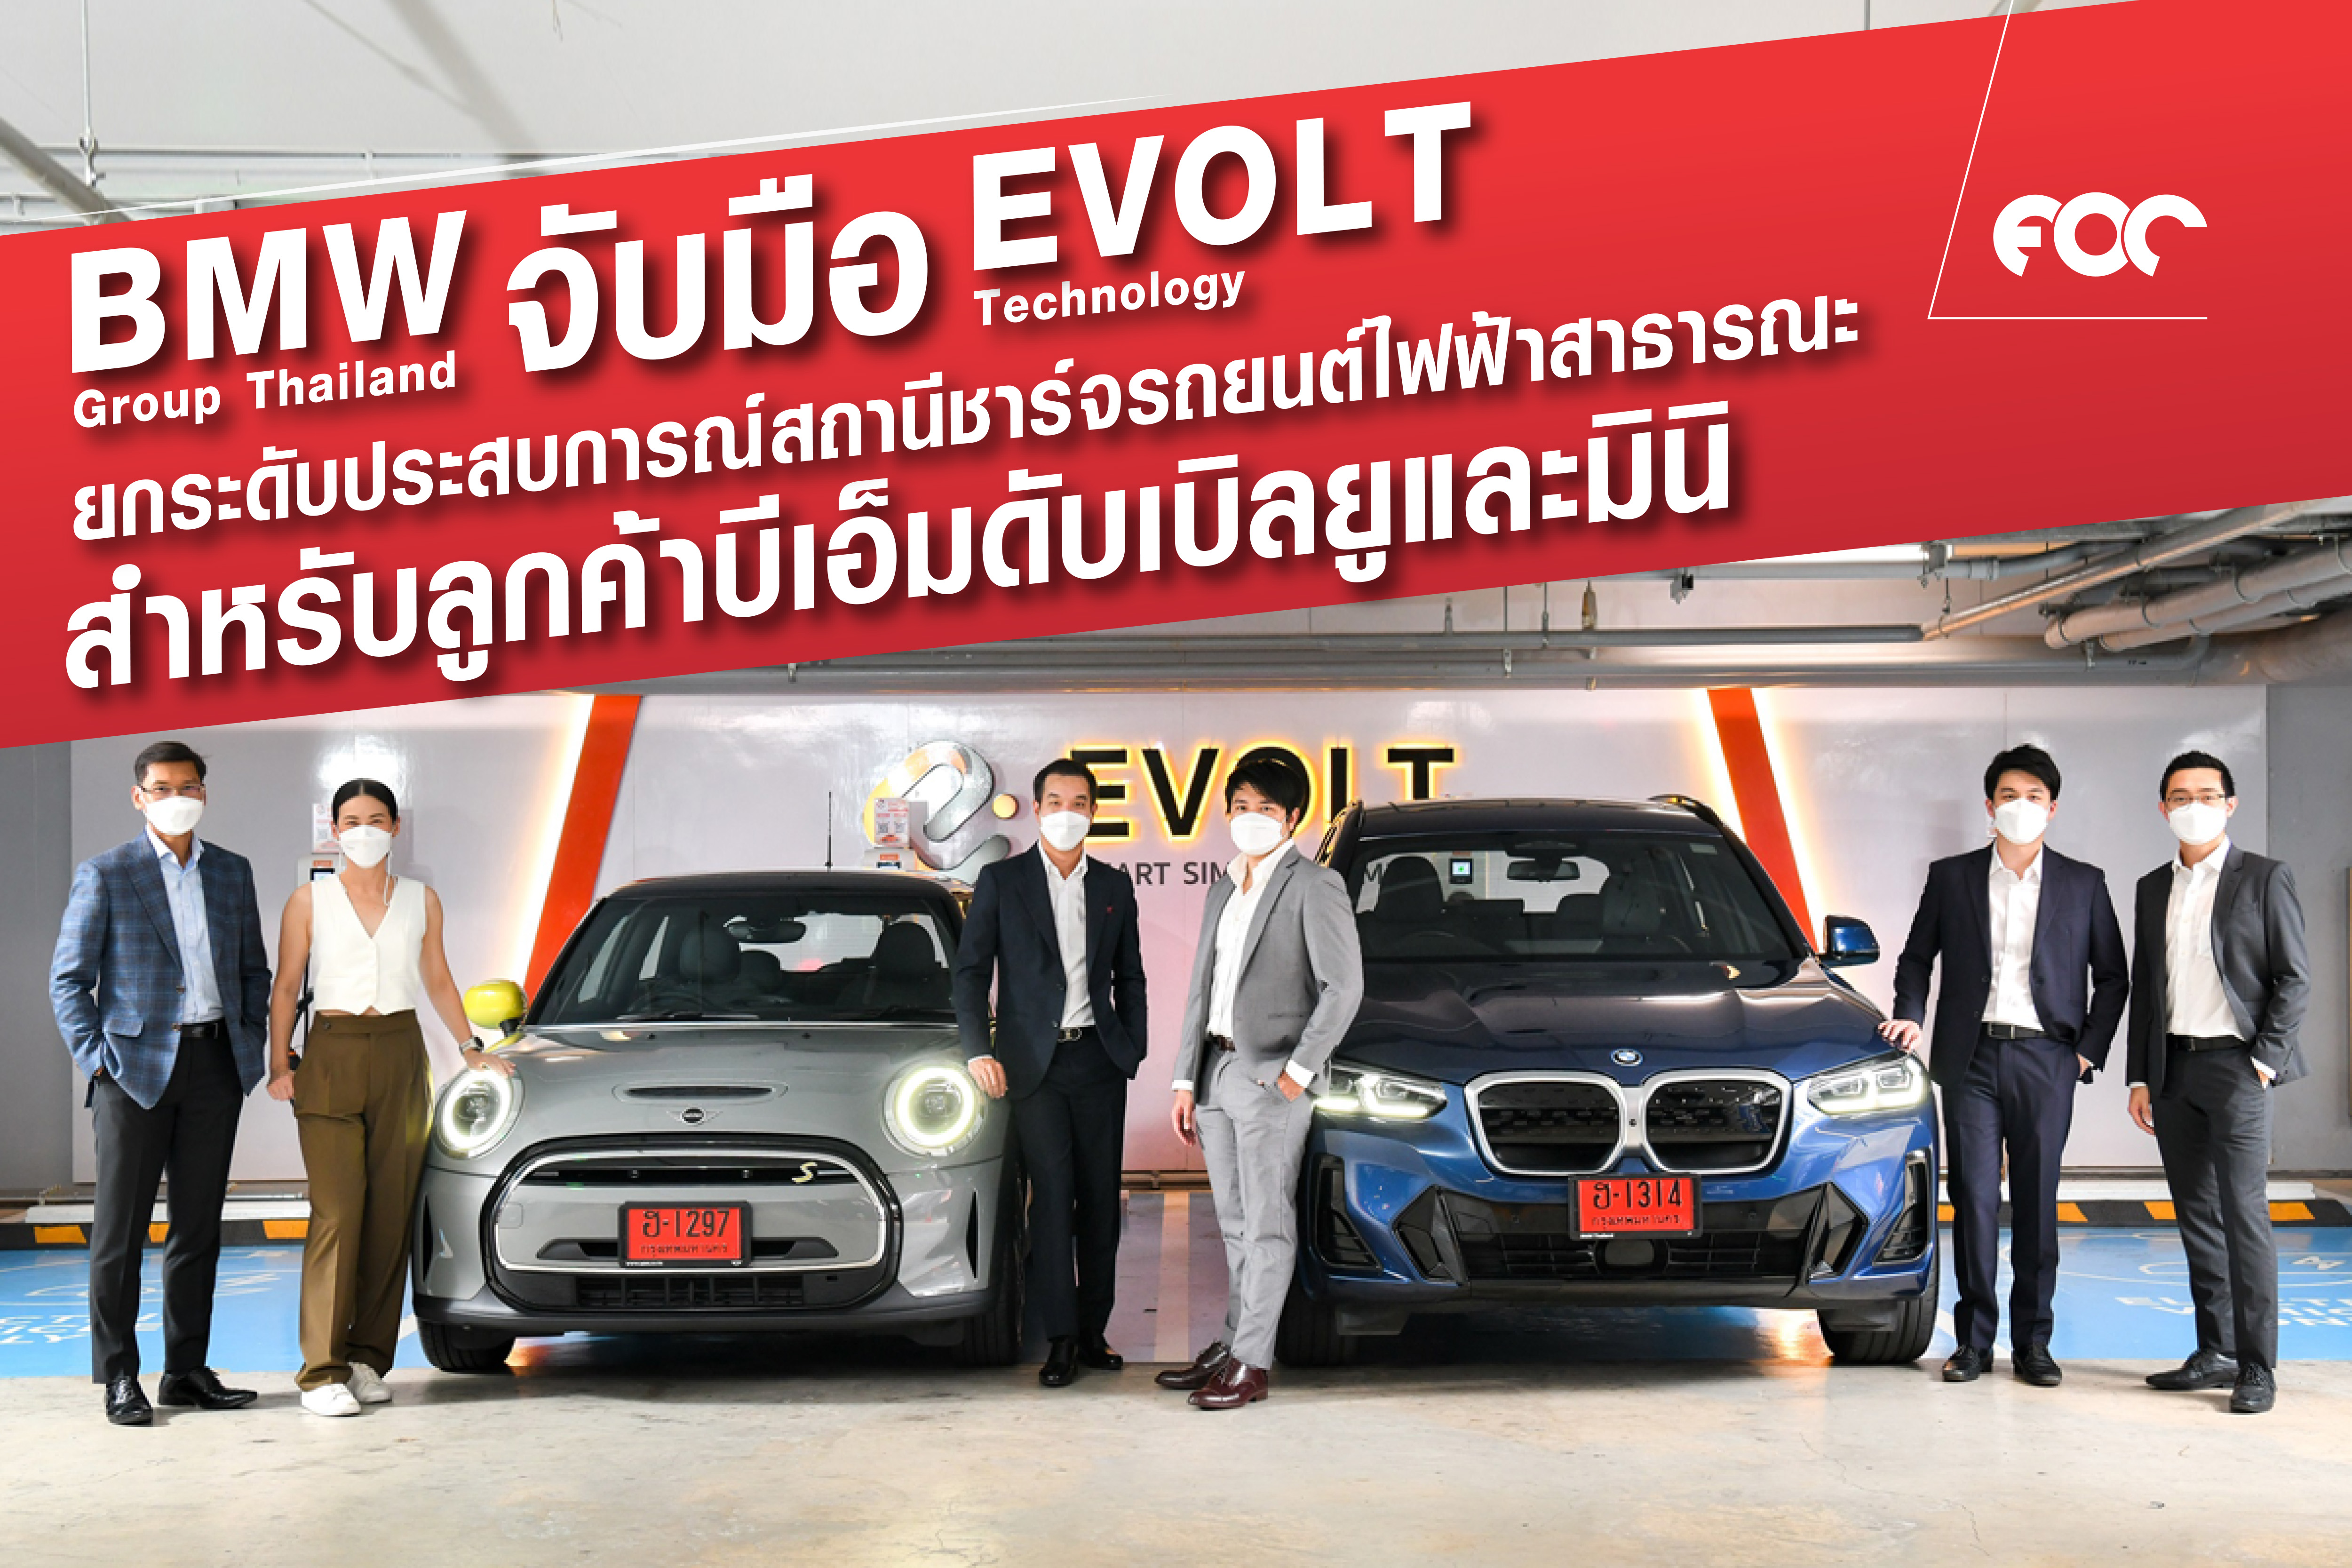 บีเอ็มดับเบิลยู กรุ๊ป ประเทศไทย จับมืออีโวลท์ เทคโนโลยี ยกระดับประสบการณ์สถานีชาร์จรถยนต์ไฟฟ้าสาธารณะสำหรับลูกค้าบีเอ็มดับเบิลยูและมินิ 